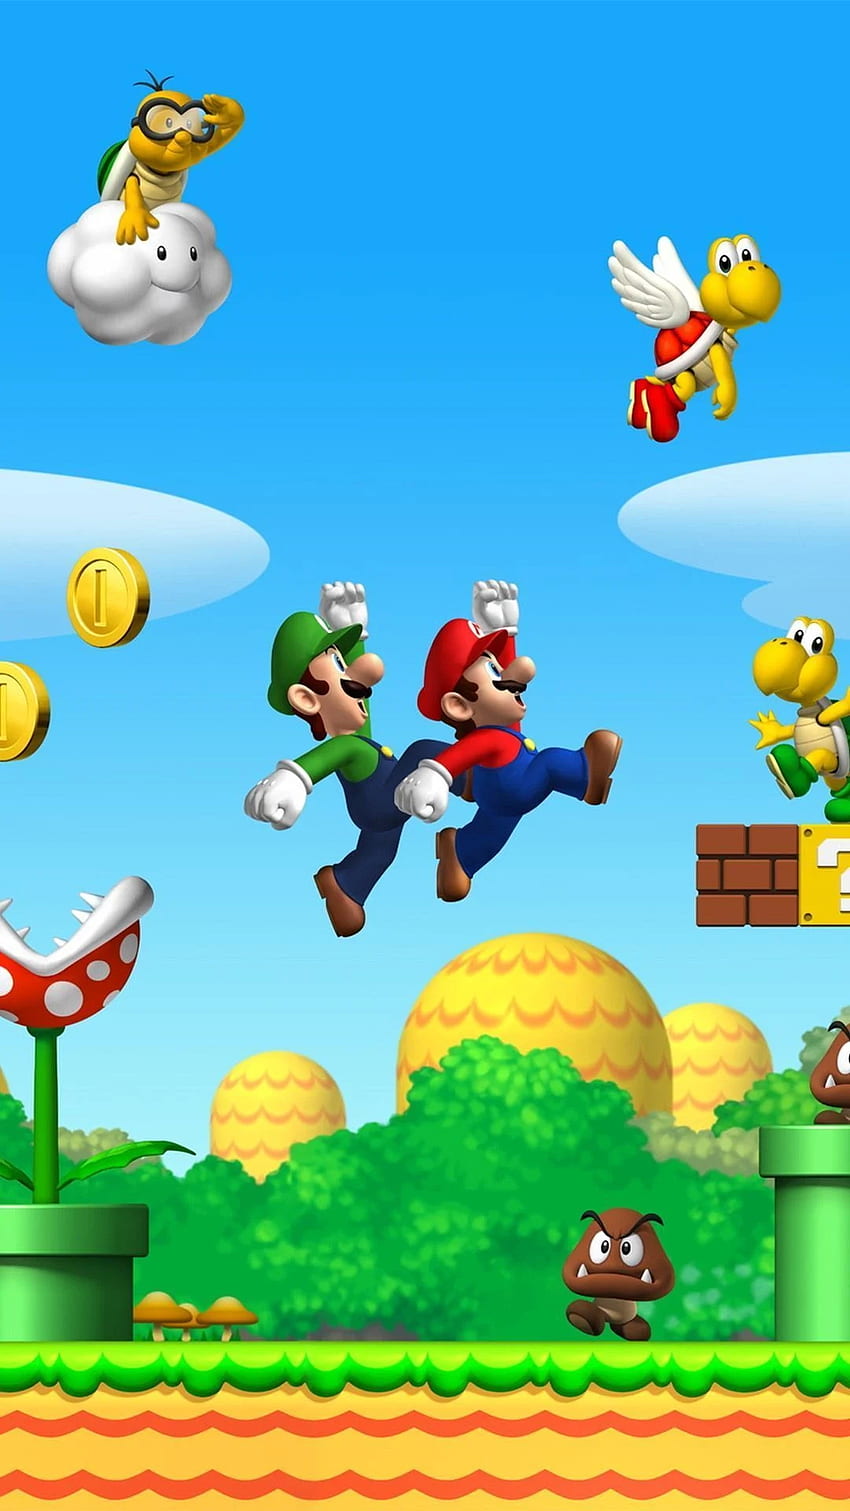 Bit Mario iPhone Background. Super mario art, Mario bros, Mario and luigi, 8 Bit Mario HD phone wallpaper